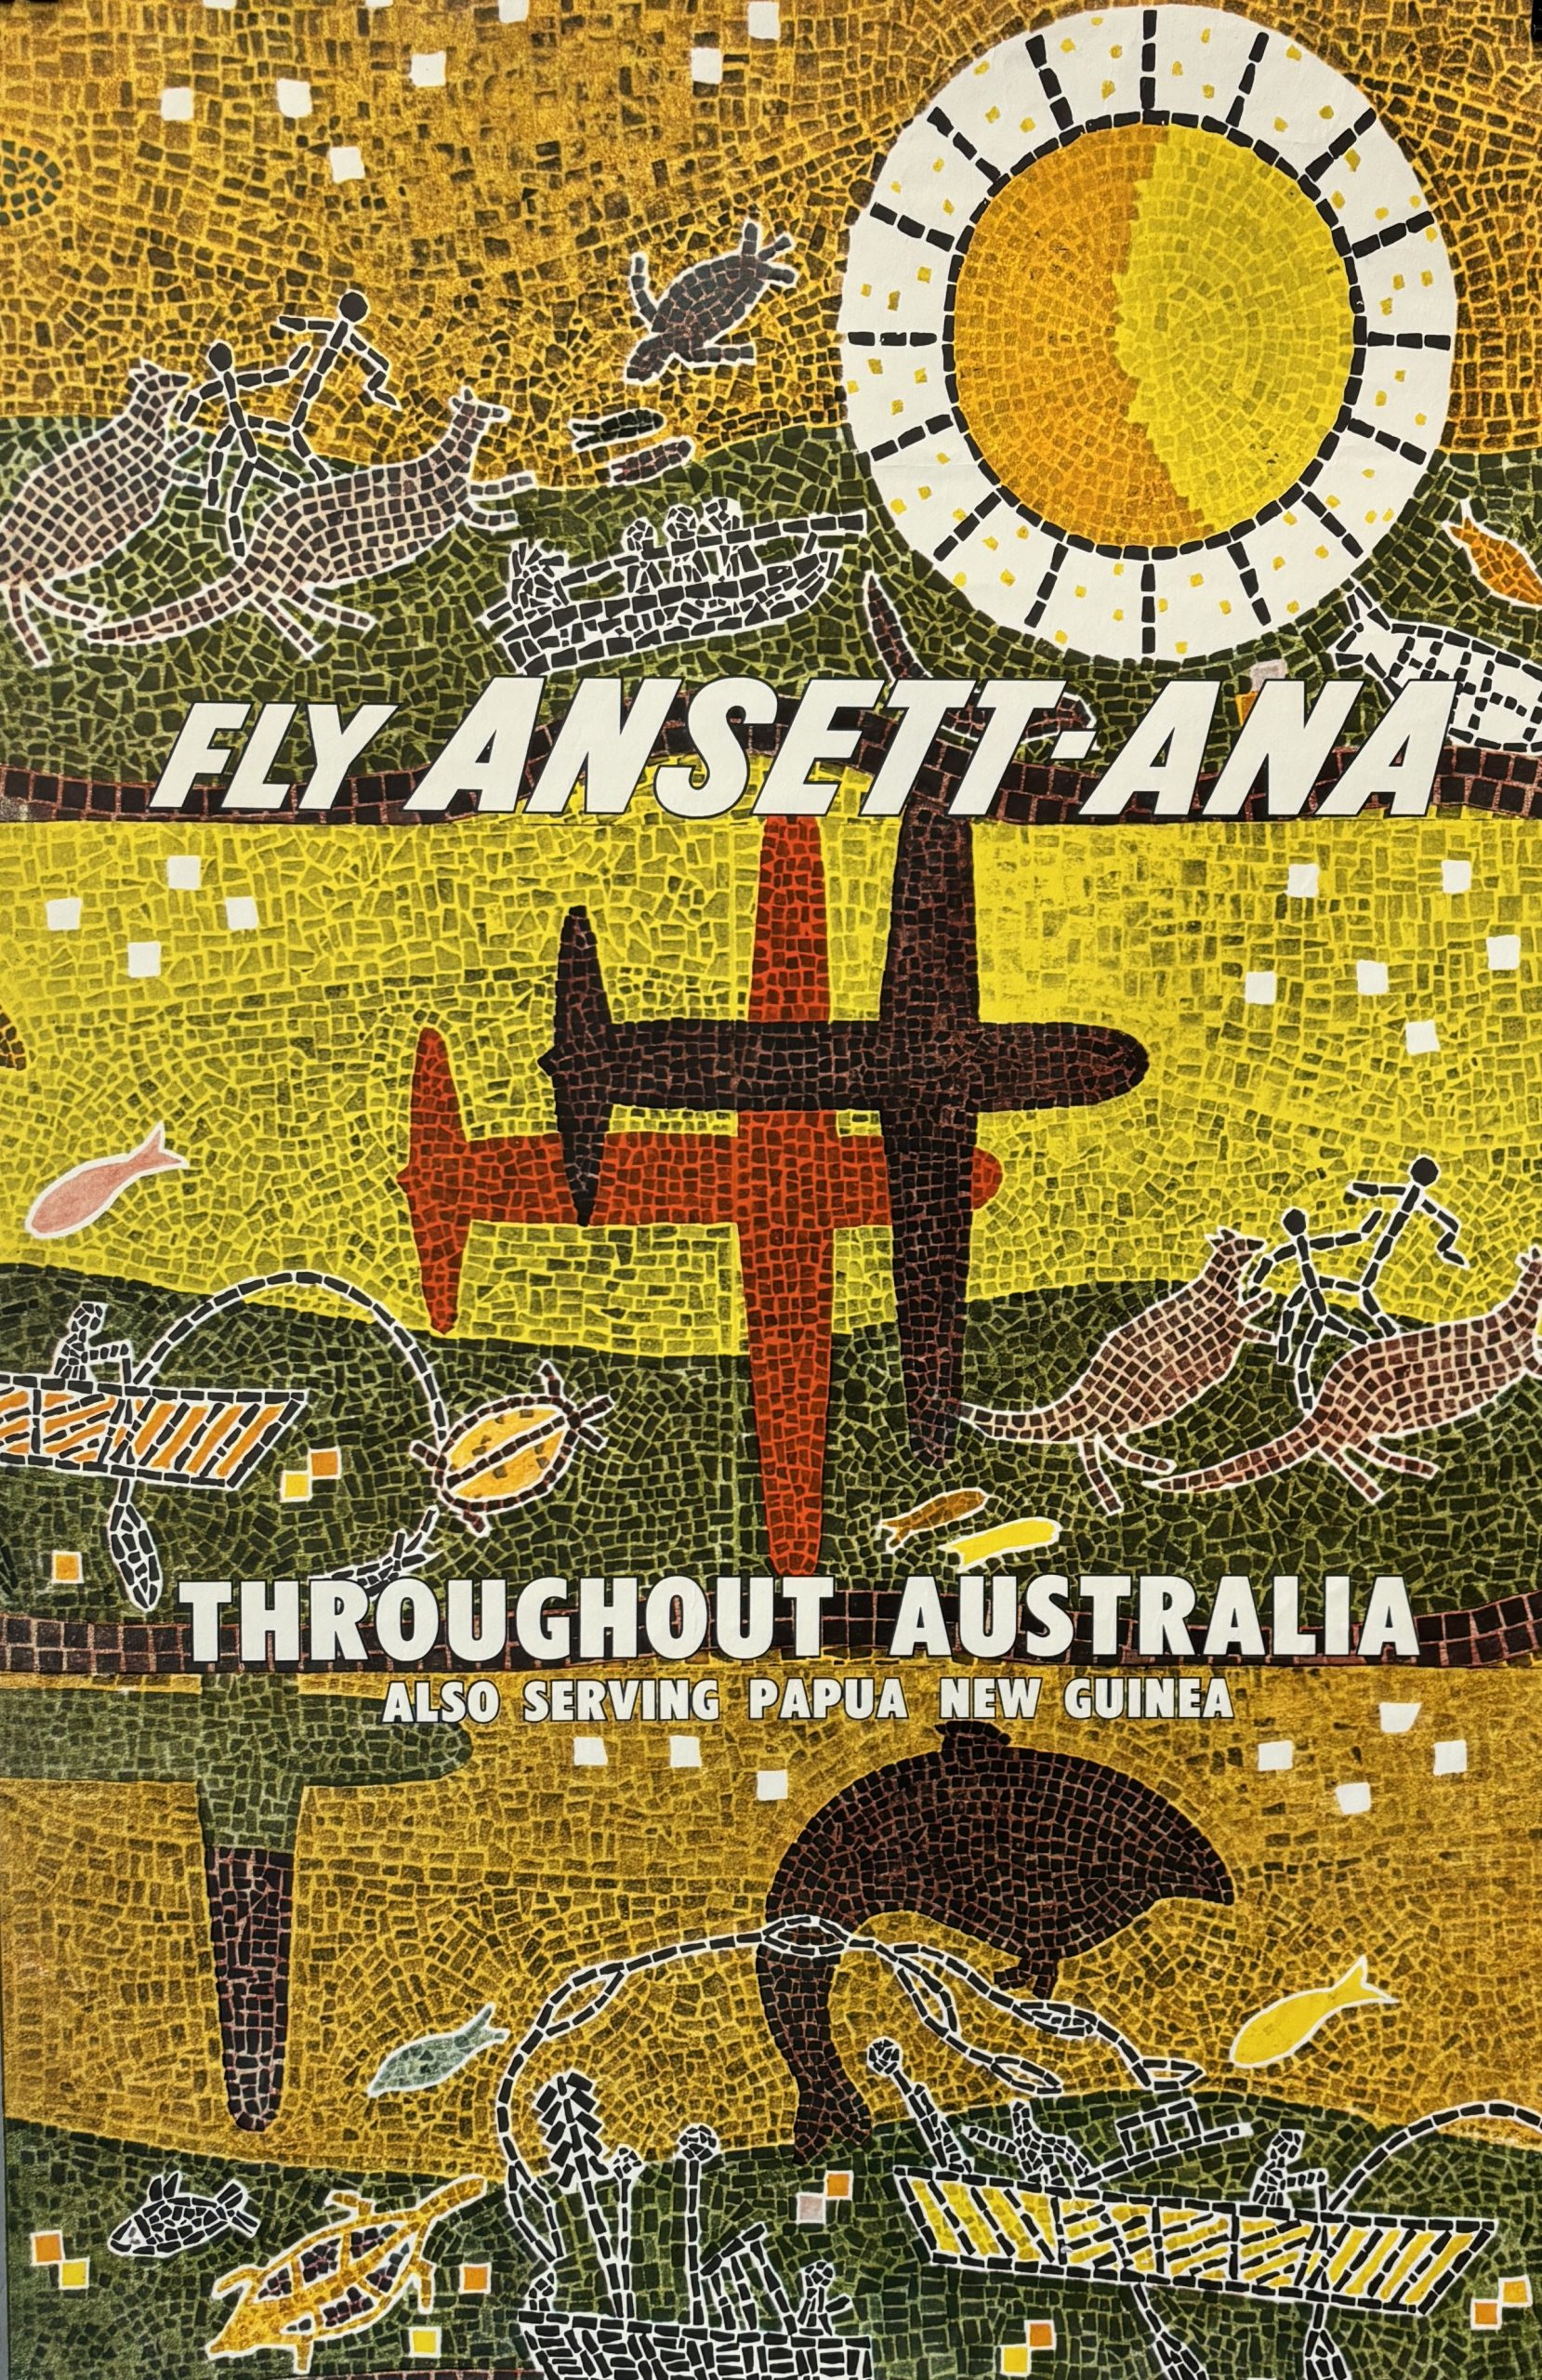 Fly Ansett-Ana Original Vintage Australian Poster